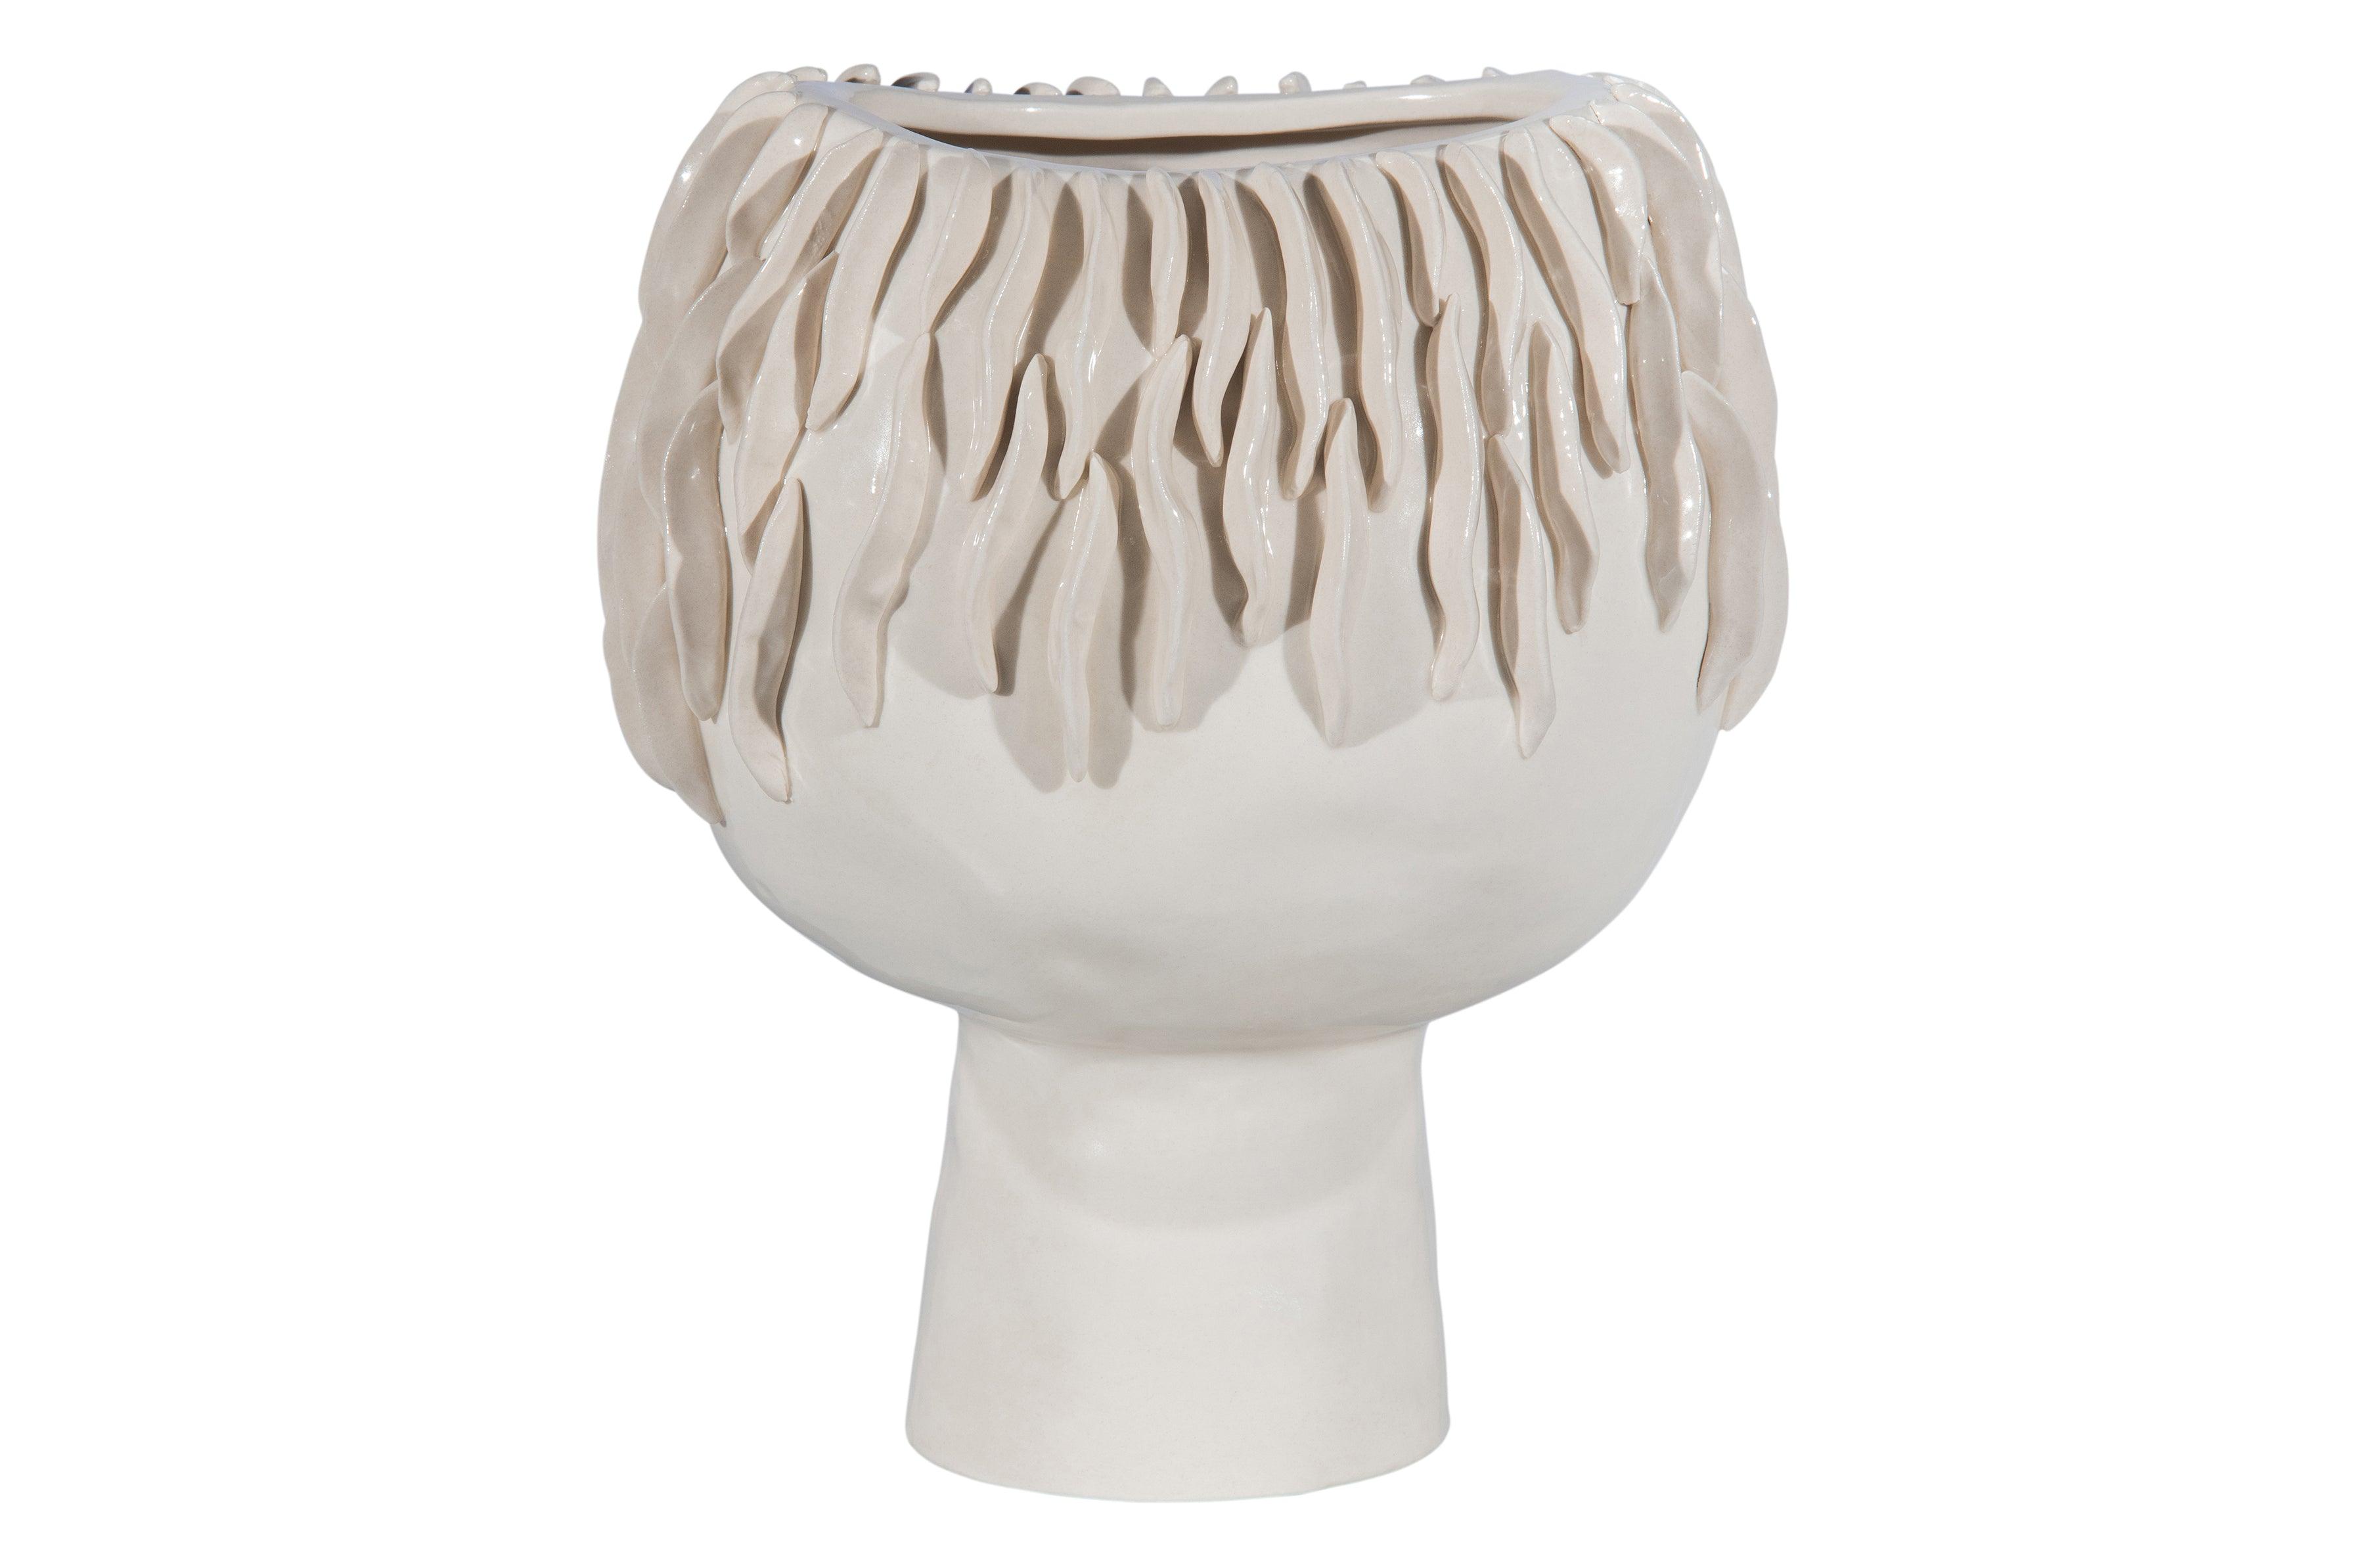 Ceramica vase de alge albe - PARIS14A.RO